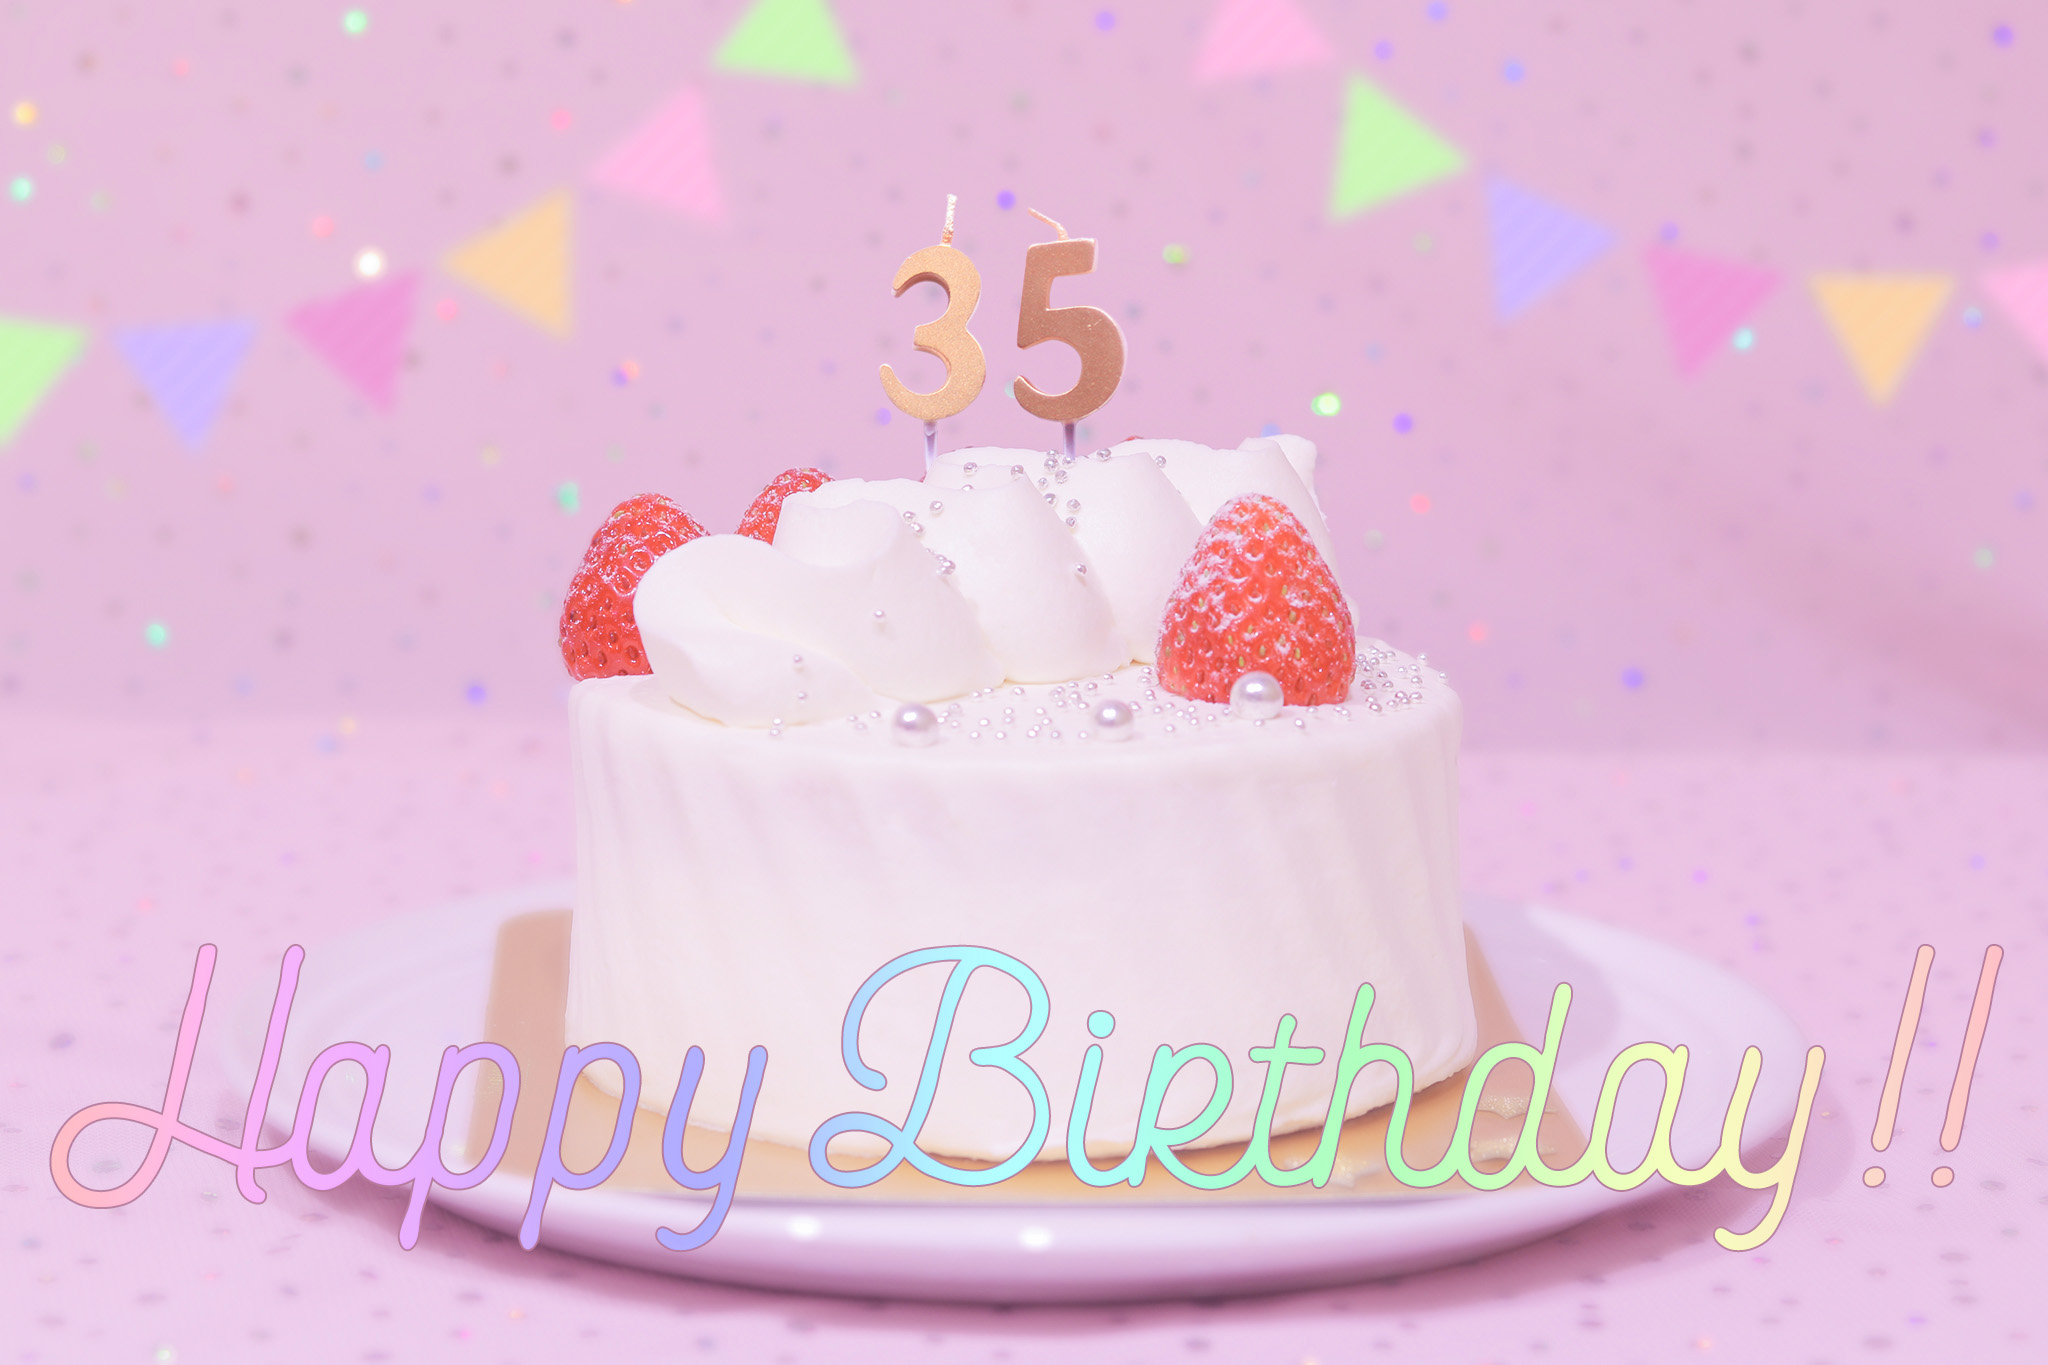 かわいい誕生日画像 ケーキとパステルカラーで可愛くお祝い 35歳編 のフリー画像 おしゃれなフリー写真素材 Girly Drop